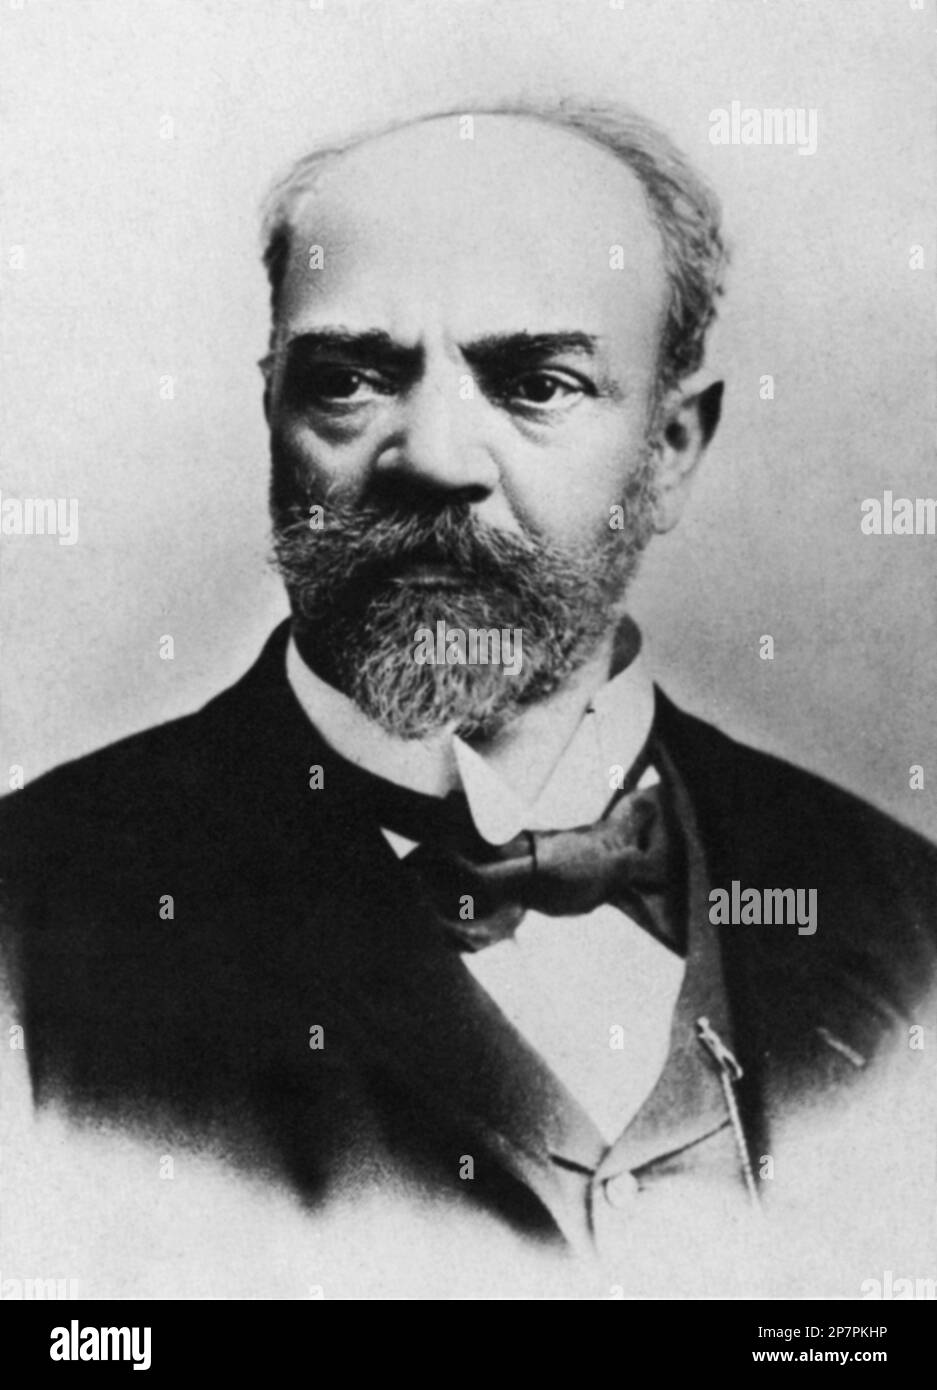 1890 c, AUSTRIA: El compositor de música bohemia ANTONIN DVORAK ( 1841 - 1904 ). Utilizó temas folclóricos estadounidenses en la SINFONÍA DEL NUEVO MUNDO , que compuso mientras dirigía un conservatorio en Nueva York. - COMPOSITORE - OPERA LIRICA - CLÁSICA - CLÁSICA - RETRATO - RITRATTO - MUSICISTA - MÚSICA - barba - collar - colletto - lazo - cravatta - papillon - ARCHIVIO GBB Foto de stock